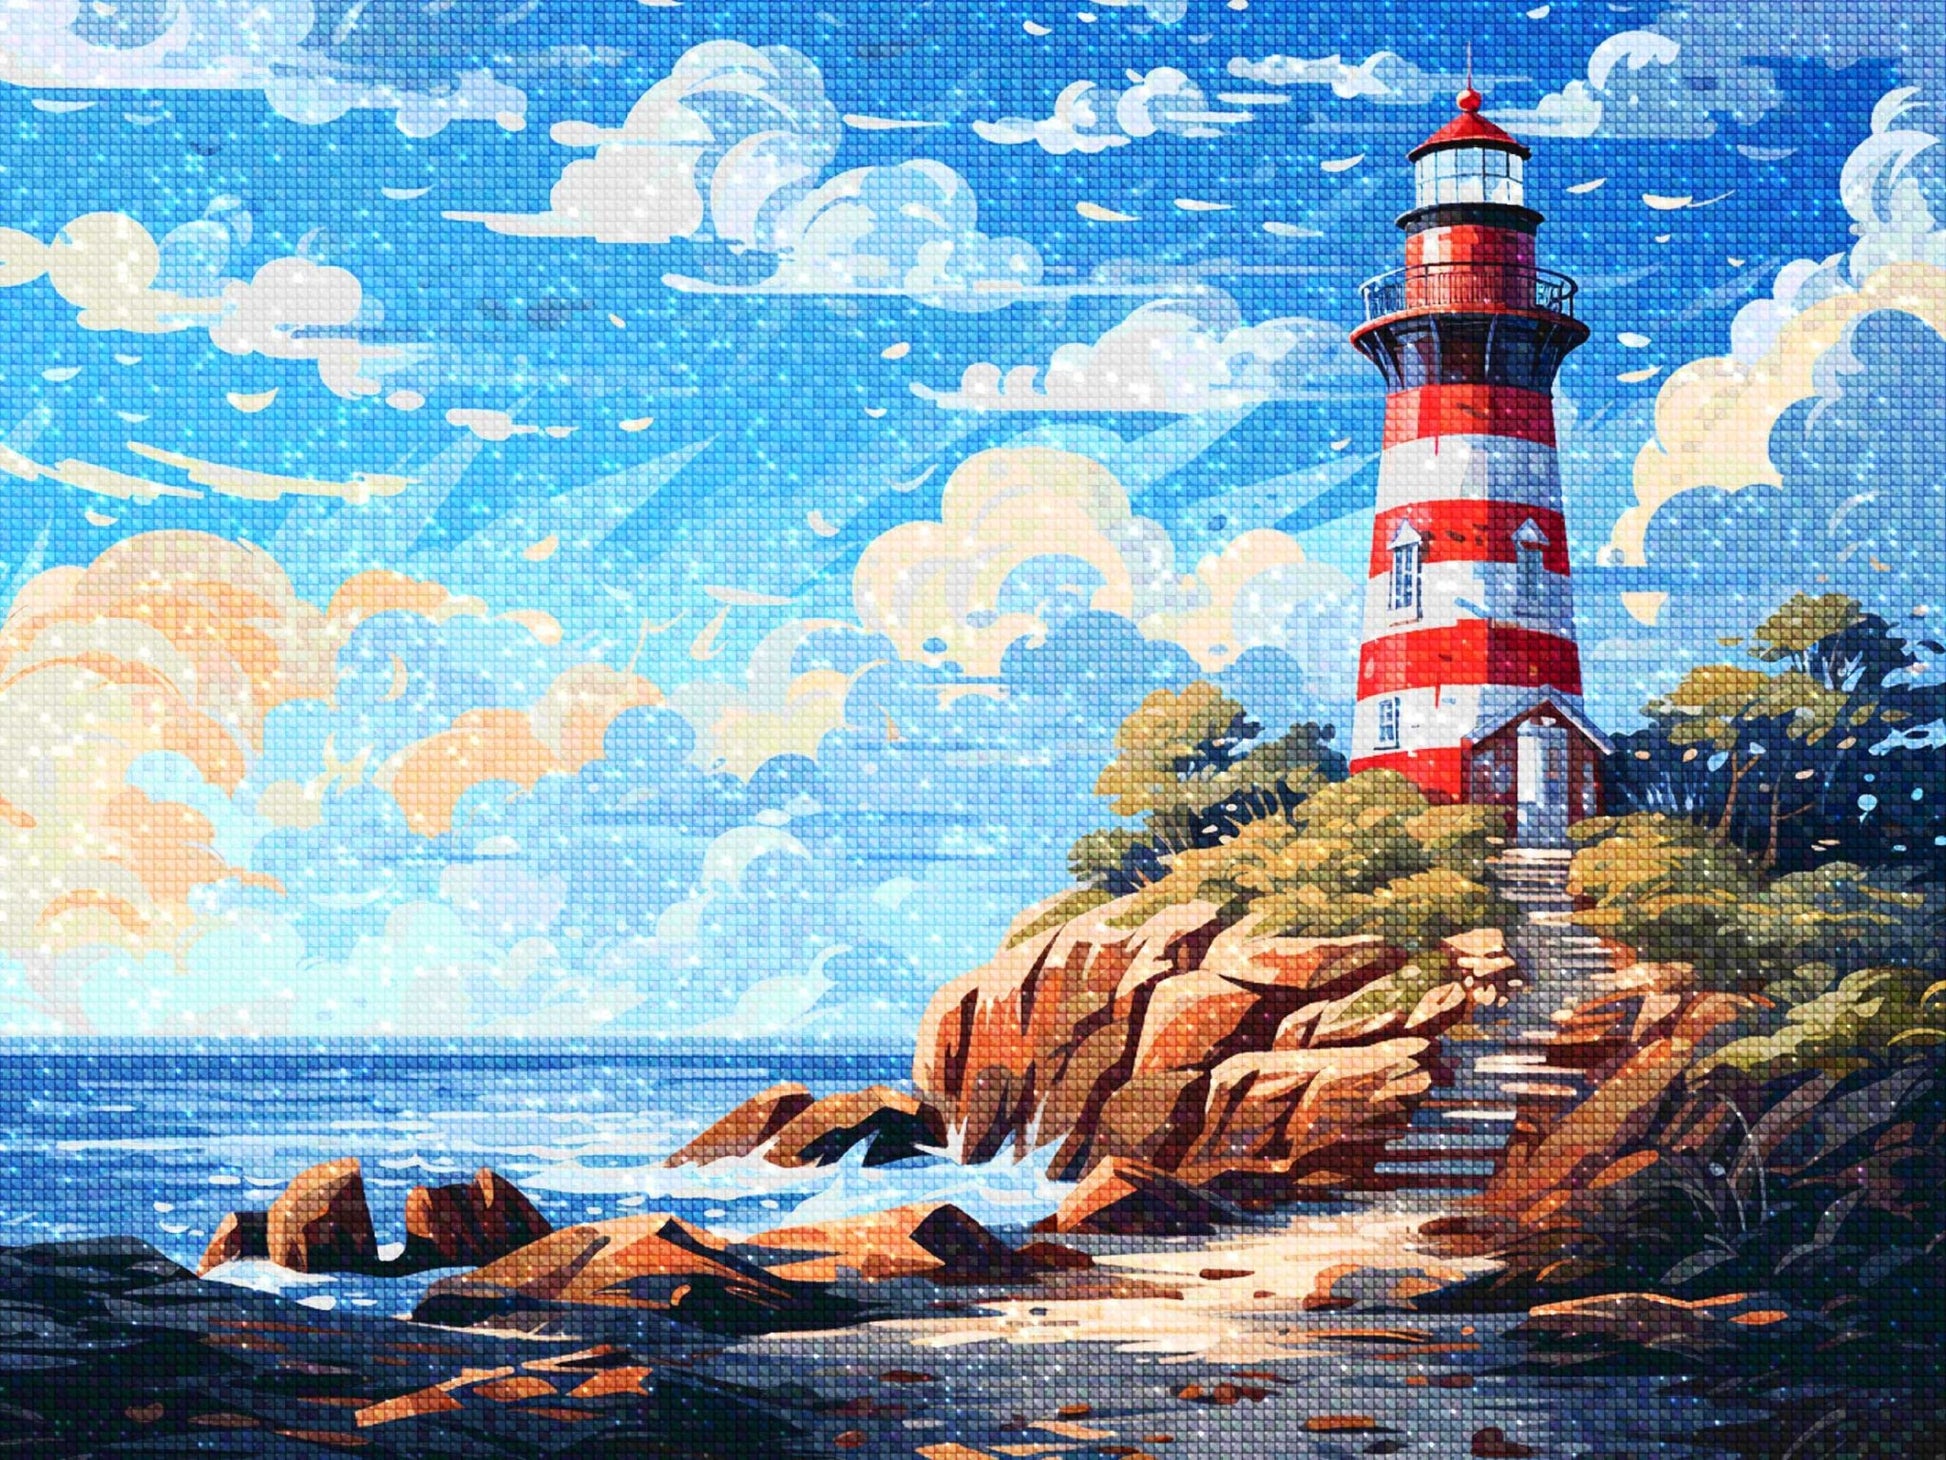 Lighthouse USA - Diamond Painting Kit - Artslo.com